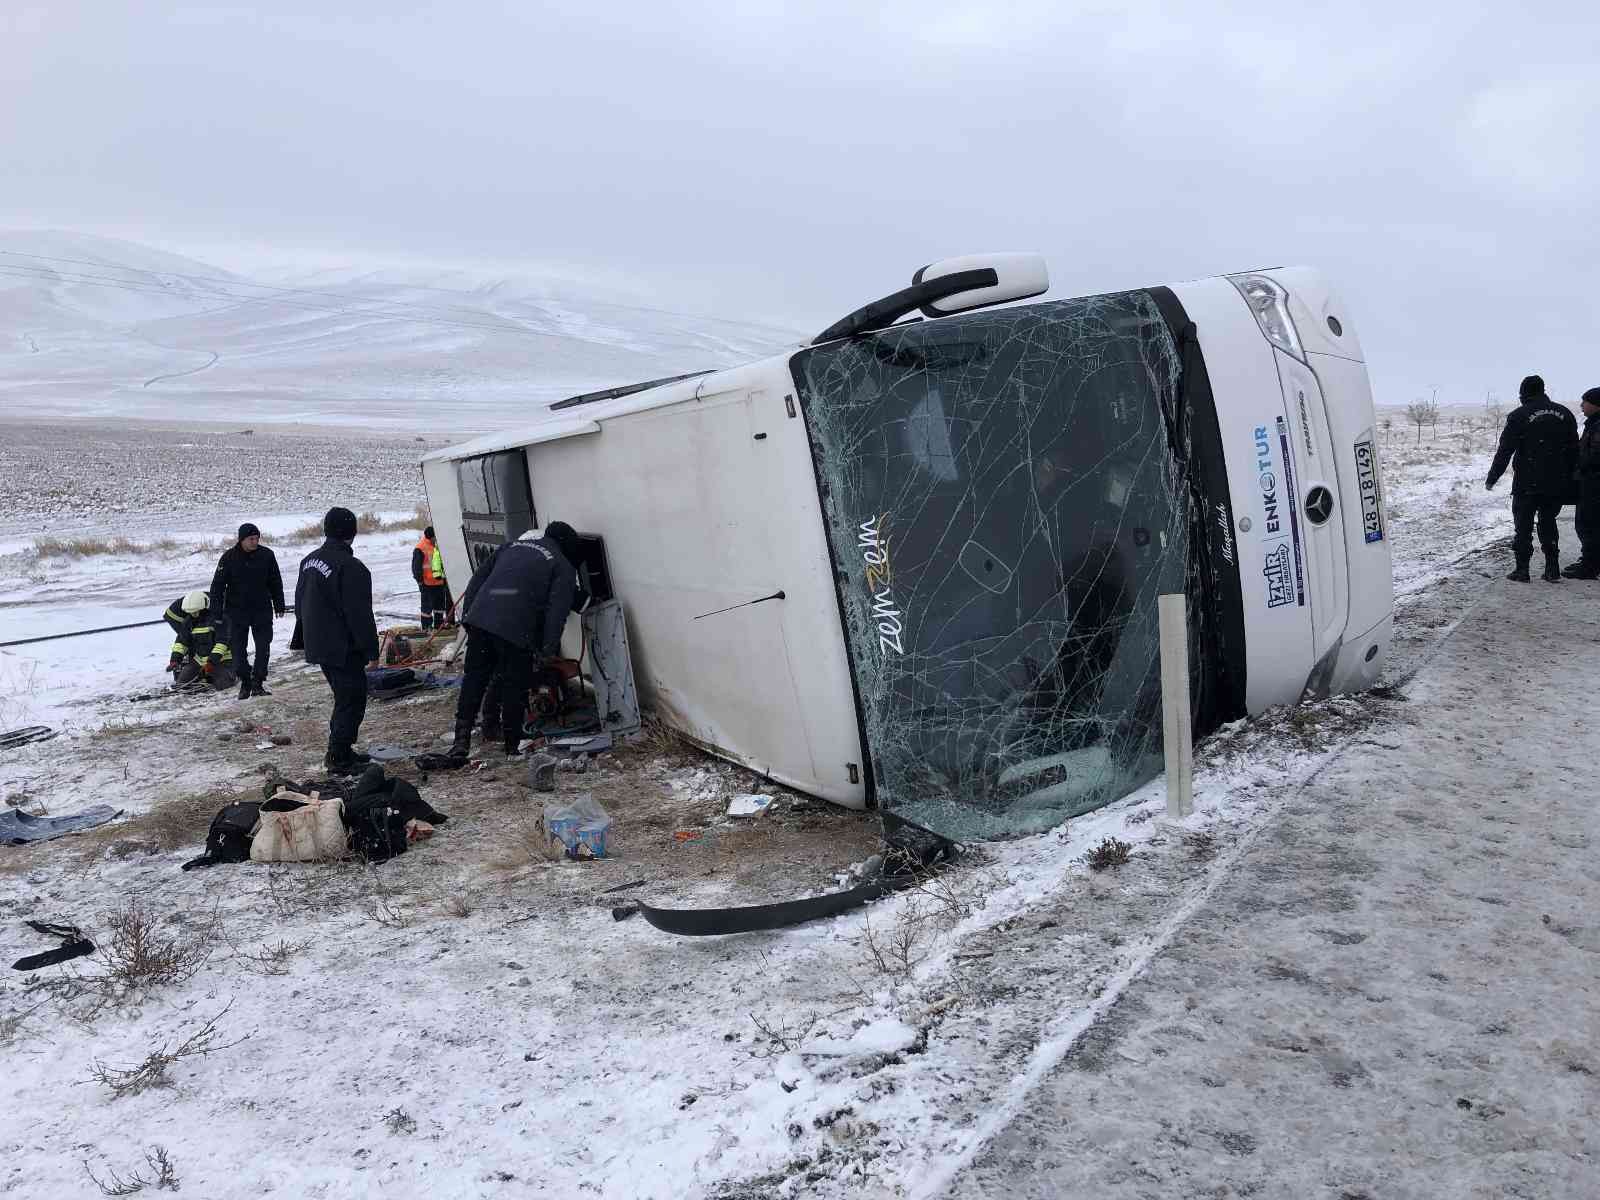 Konya’da otobüs şarampole devrildi: 5 ölü, 42 yaralı #konya